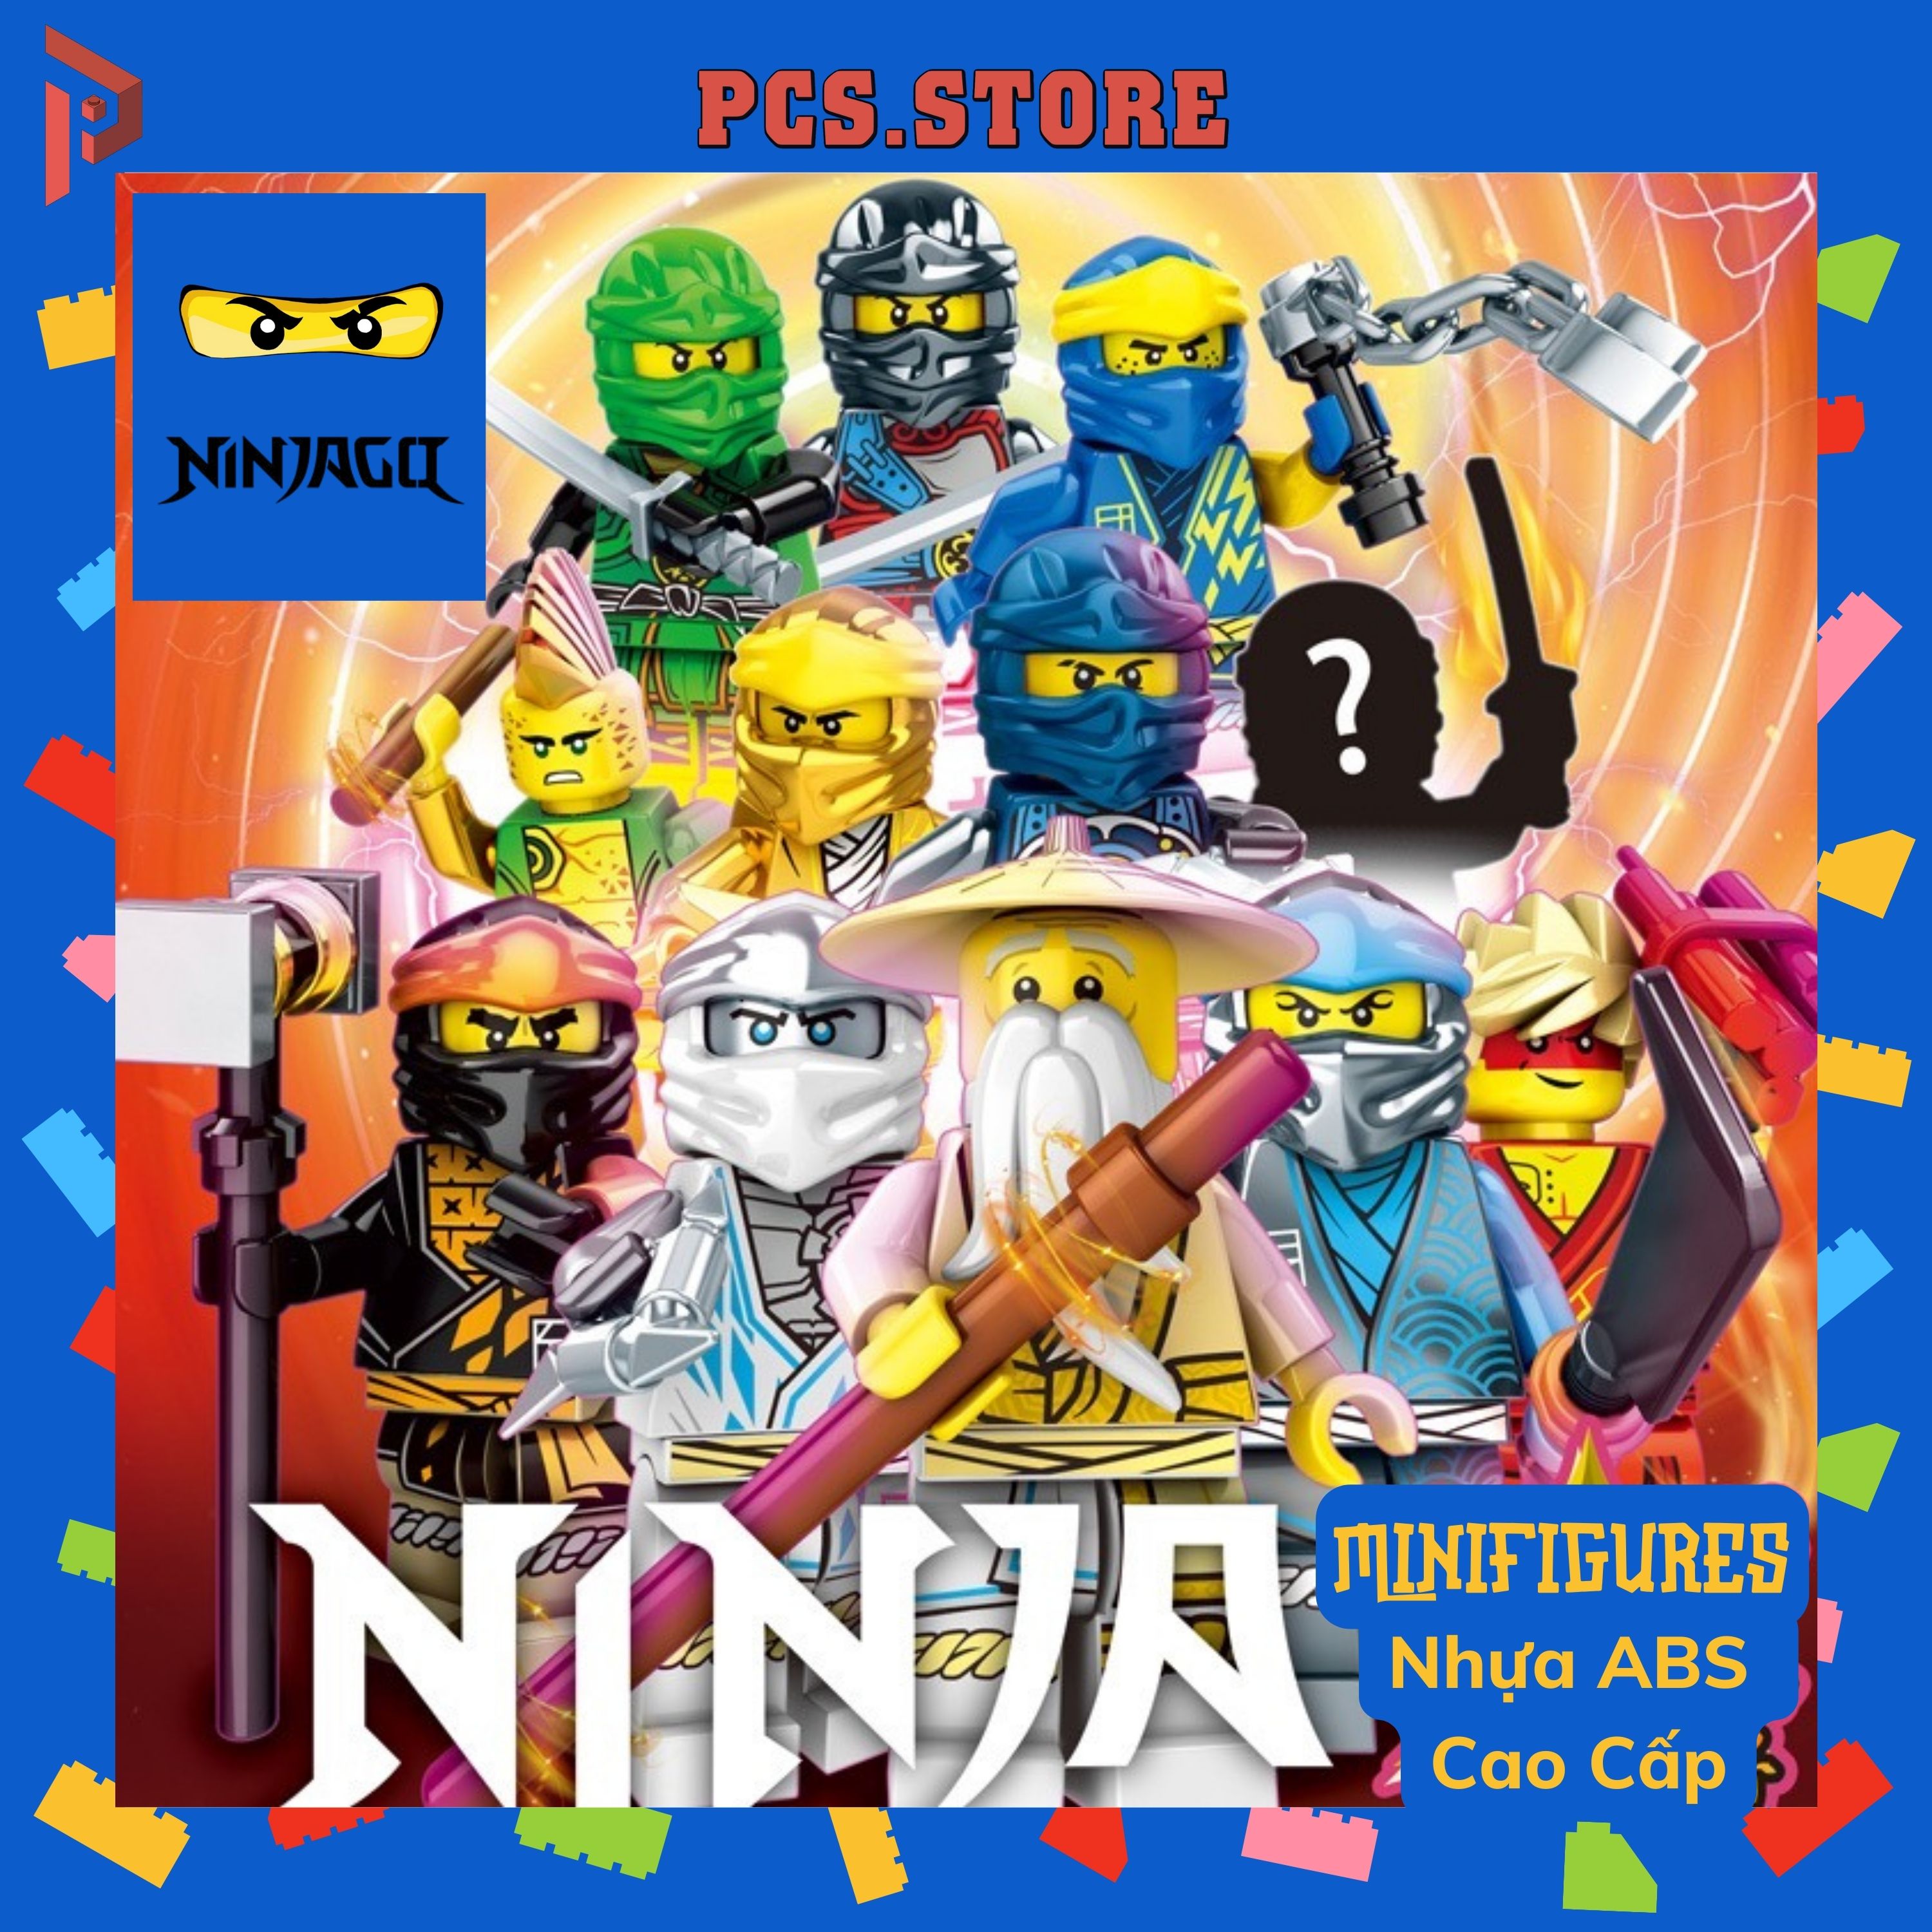 Đồ Chơi Lắp Ráp Minifigures Nhân Vật Bí Ẩn Ninjago - PCS STORE